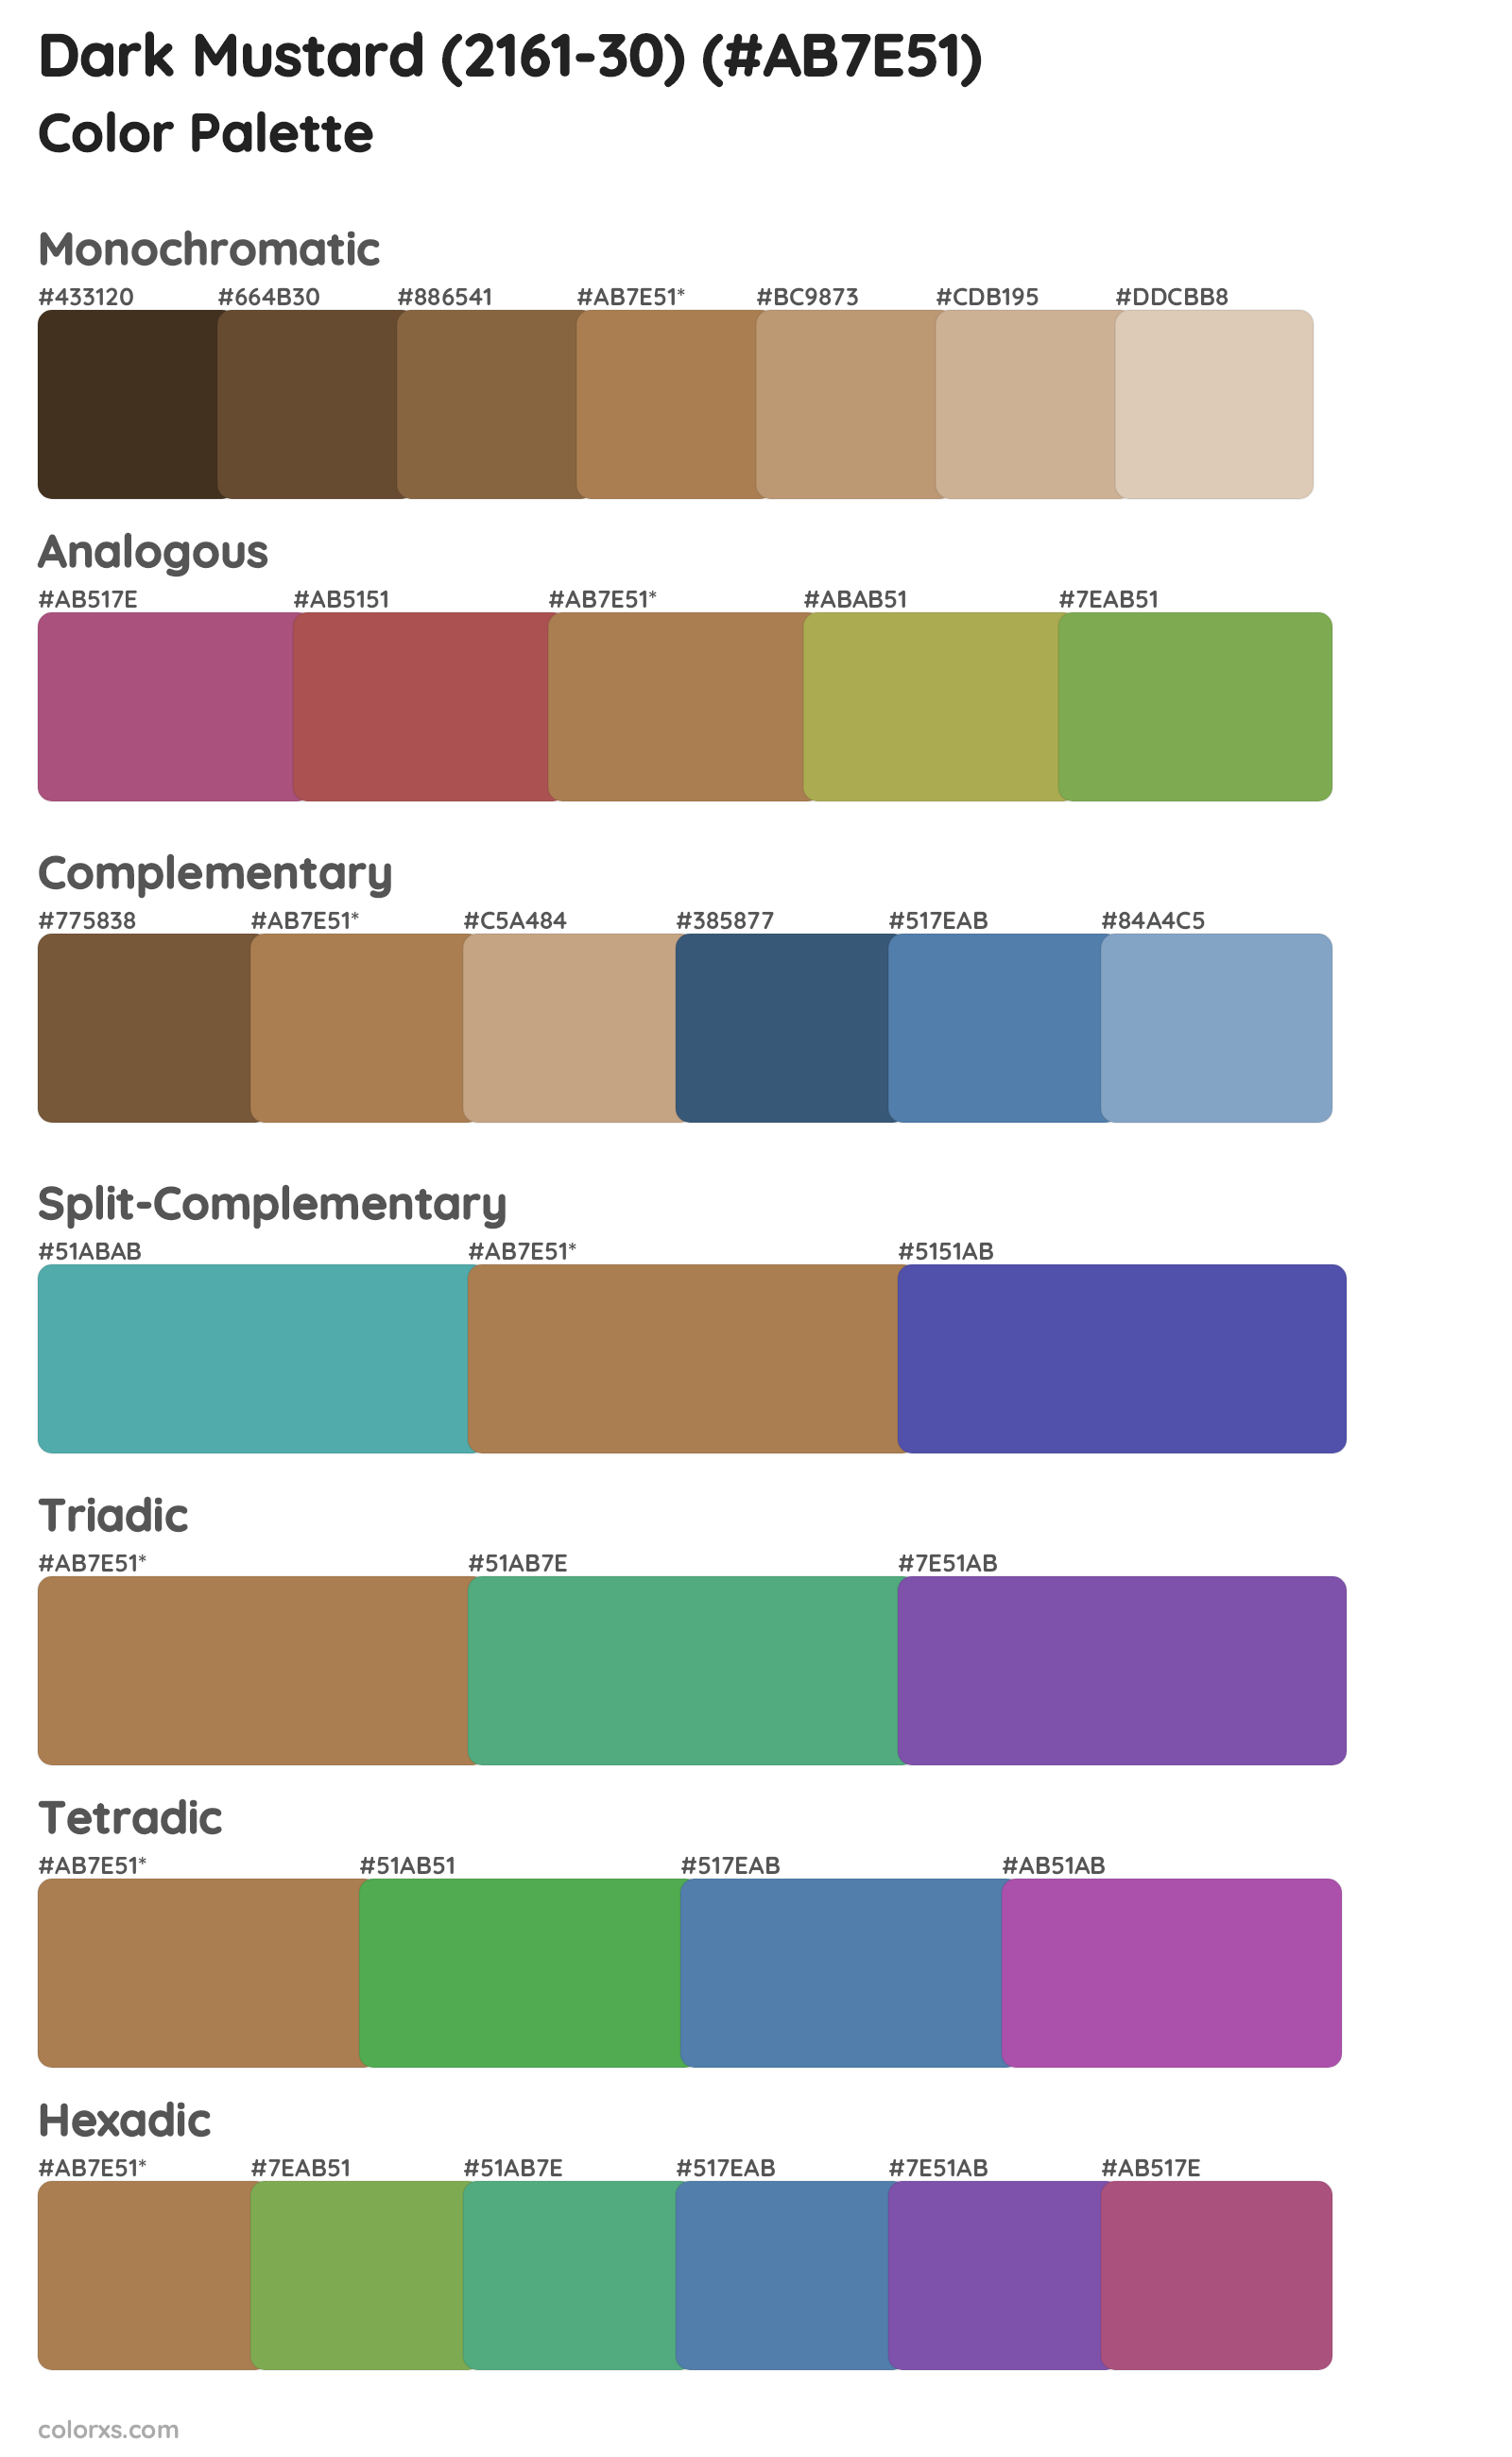 Dark Mustard (2161-30) Color Scheme Palettes